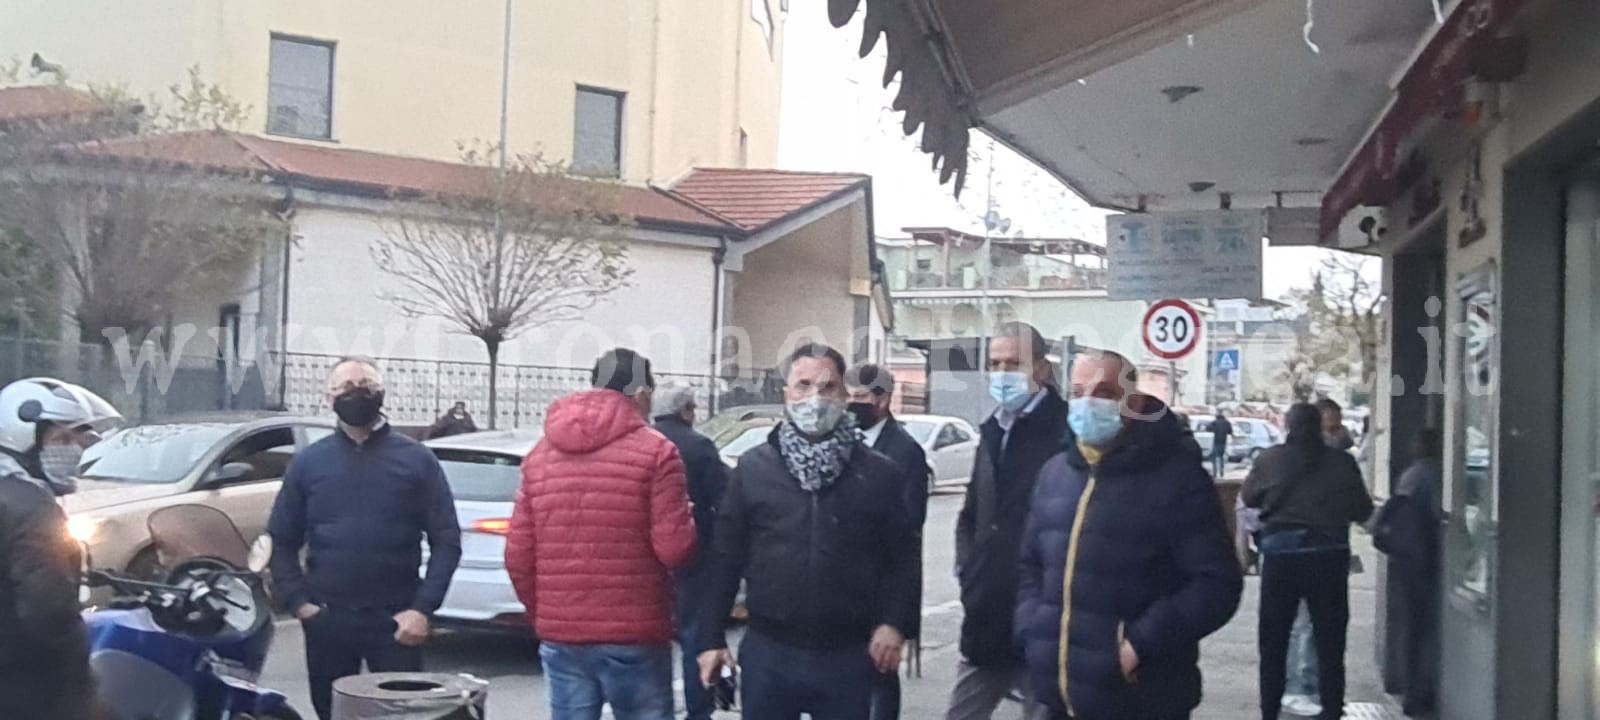 De Luca blocca la riapertura dei ristoranti: a Pozzuoli scoppia la protesta «Così ci ammazzano»